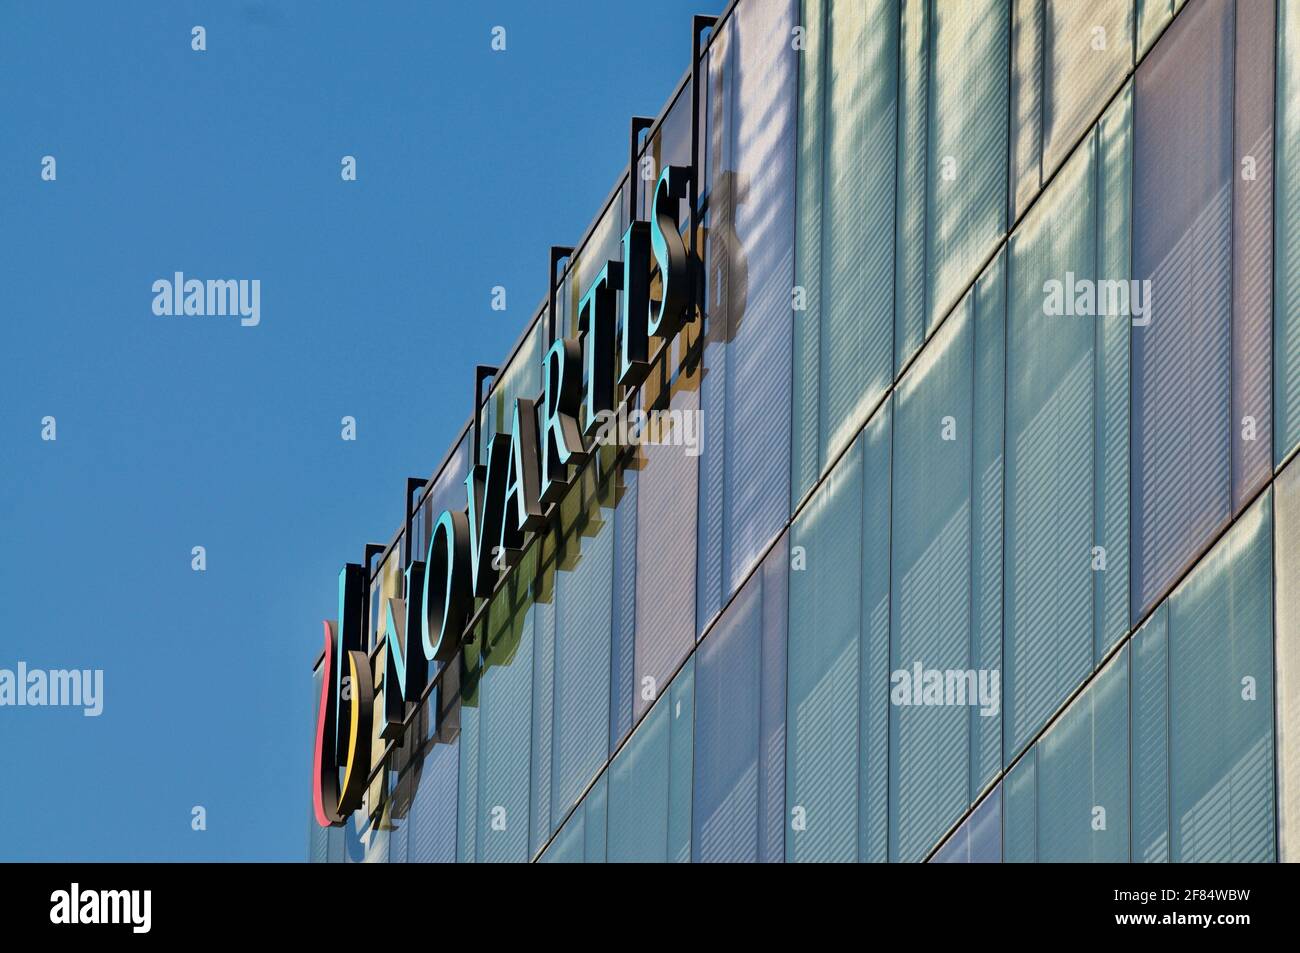 Rotkreuz, Zug, Suisse - 28 mars 2021 : vue latérale de l'enseigne Novartis accrochée au bâtiment de Rotkreuz, Suisse. Novartis est l'un des lar Banque D'Images